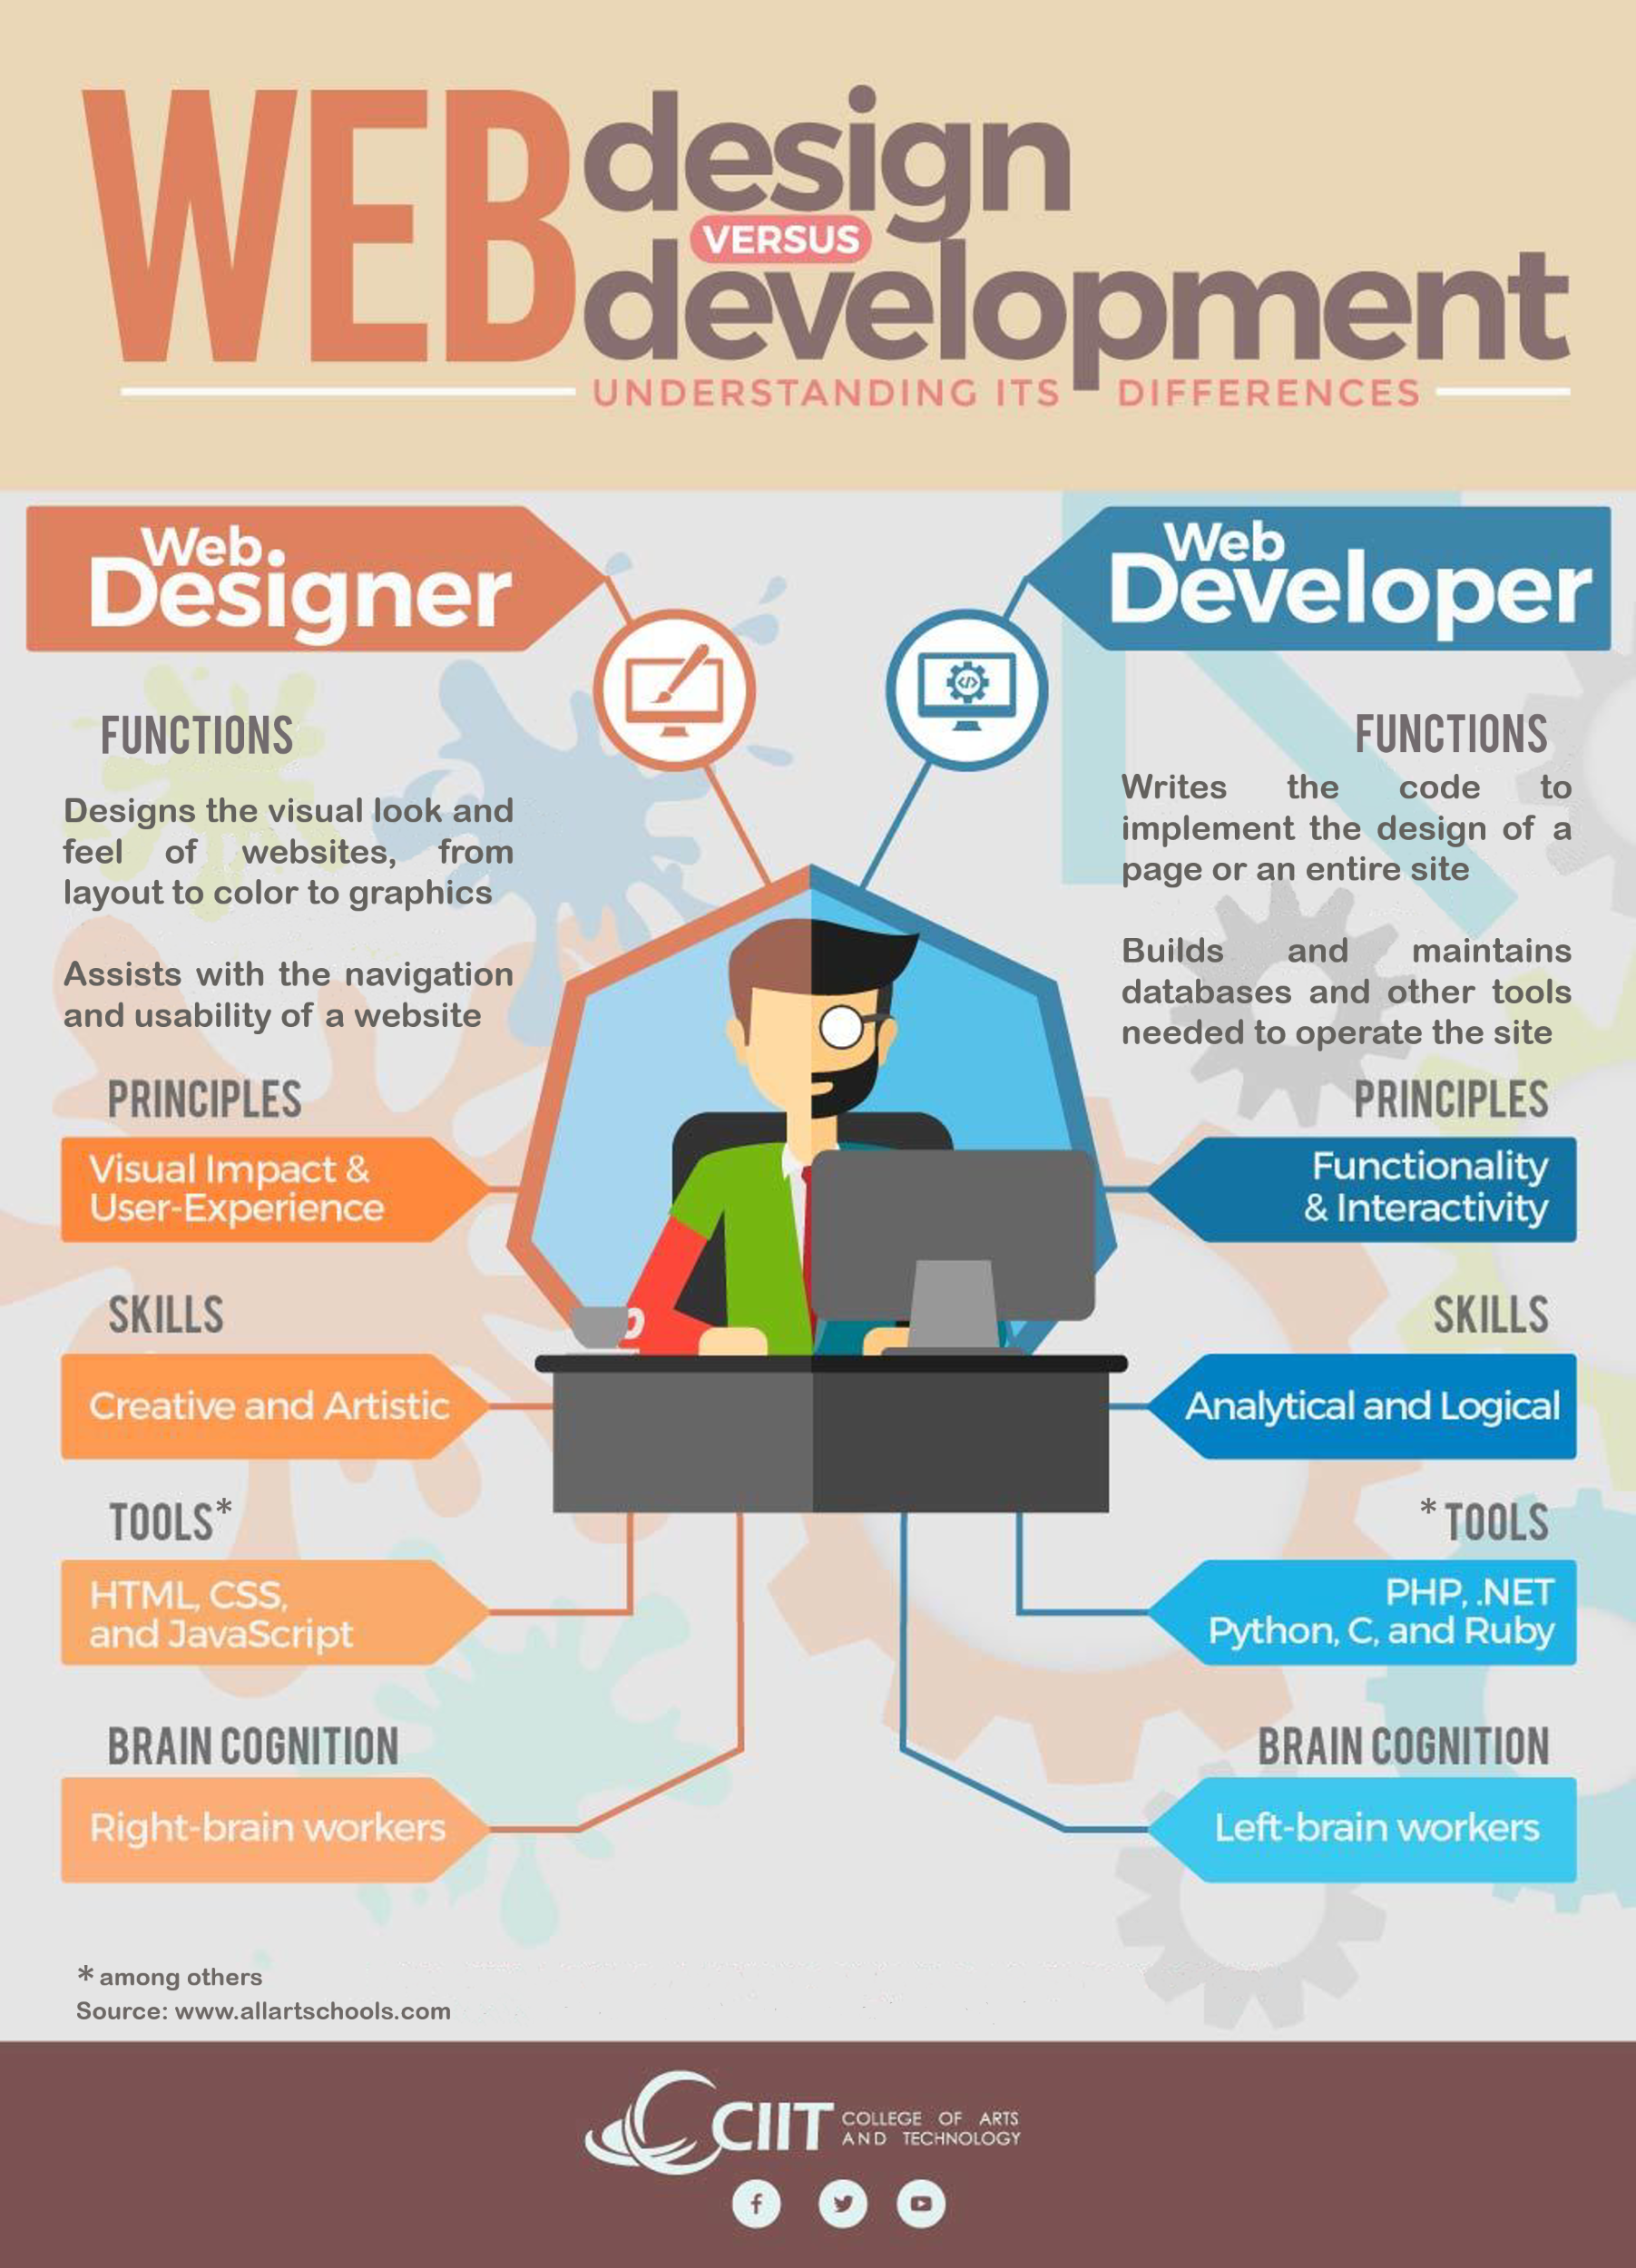 Web designer vs web developer: A straightforward comparison